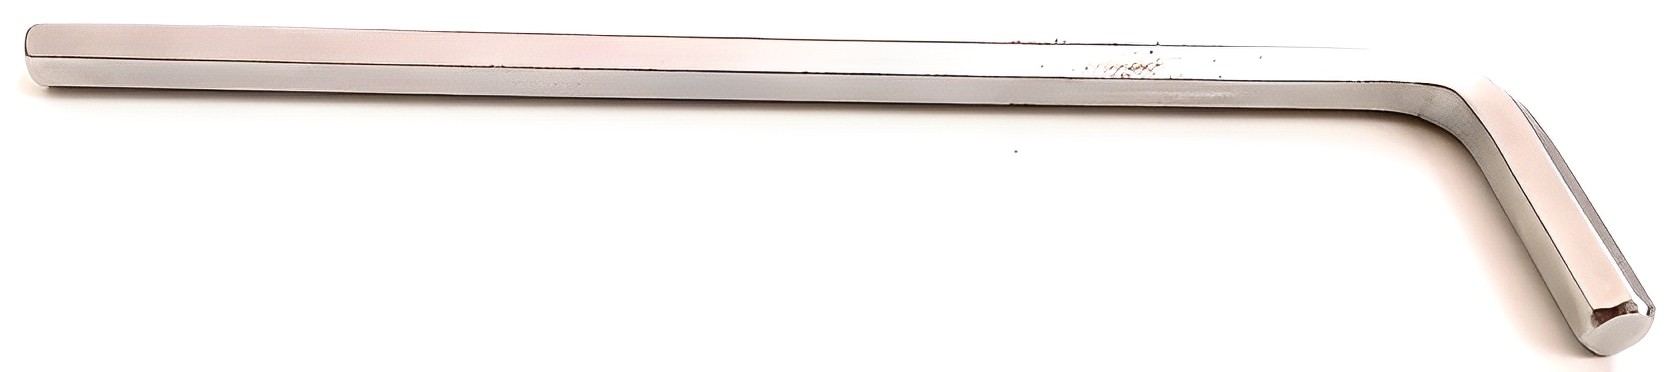 Hình ảnh 1 của mặt hàng Lục giác dài 5mm Stanley STMT94115-8